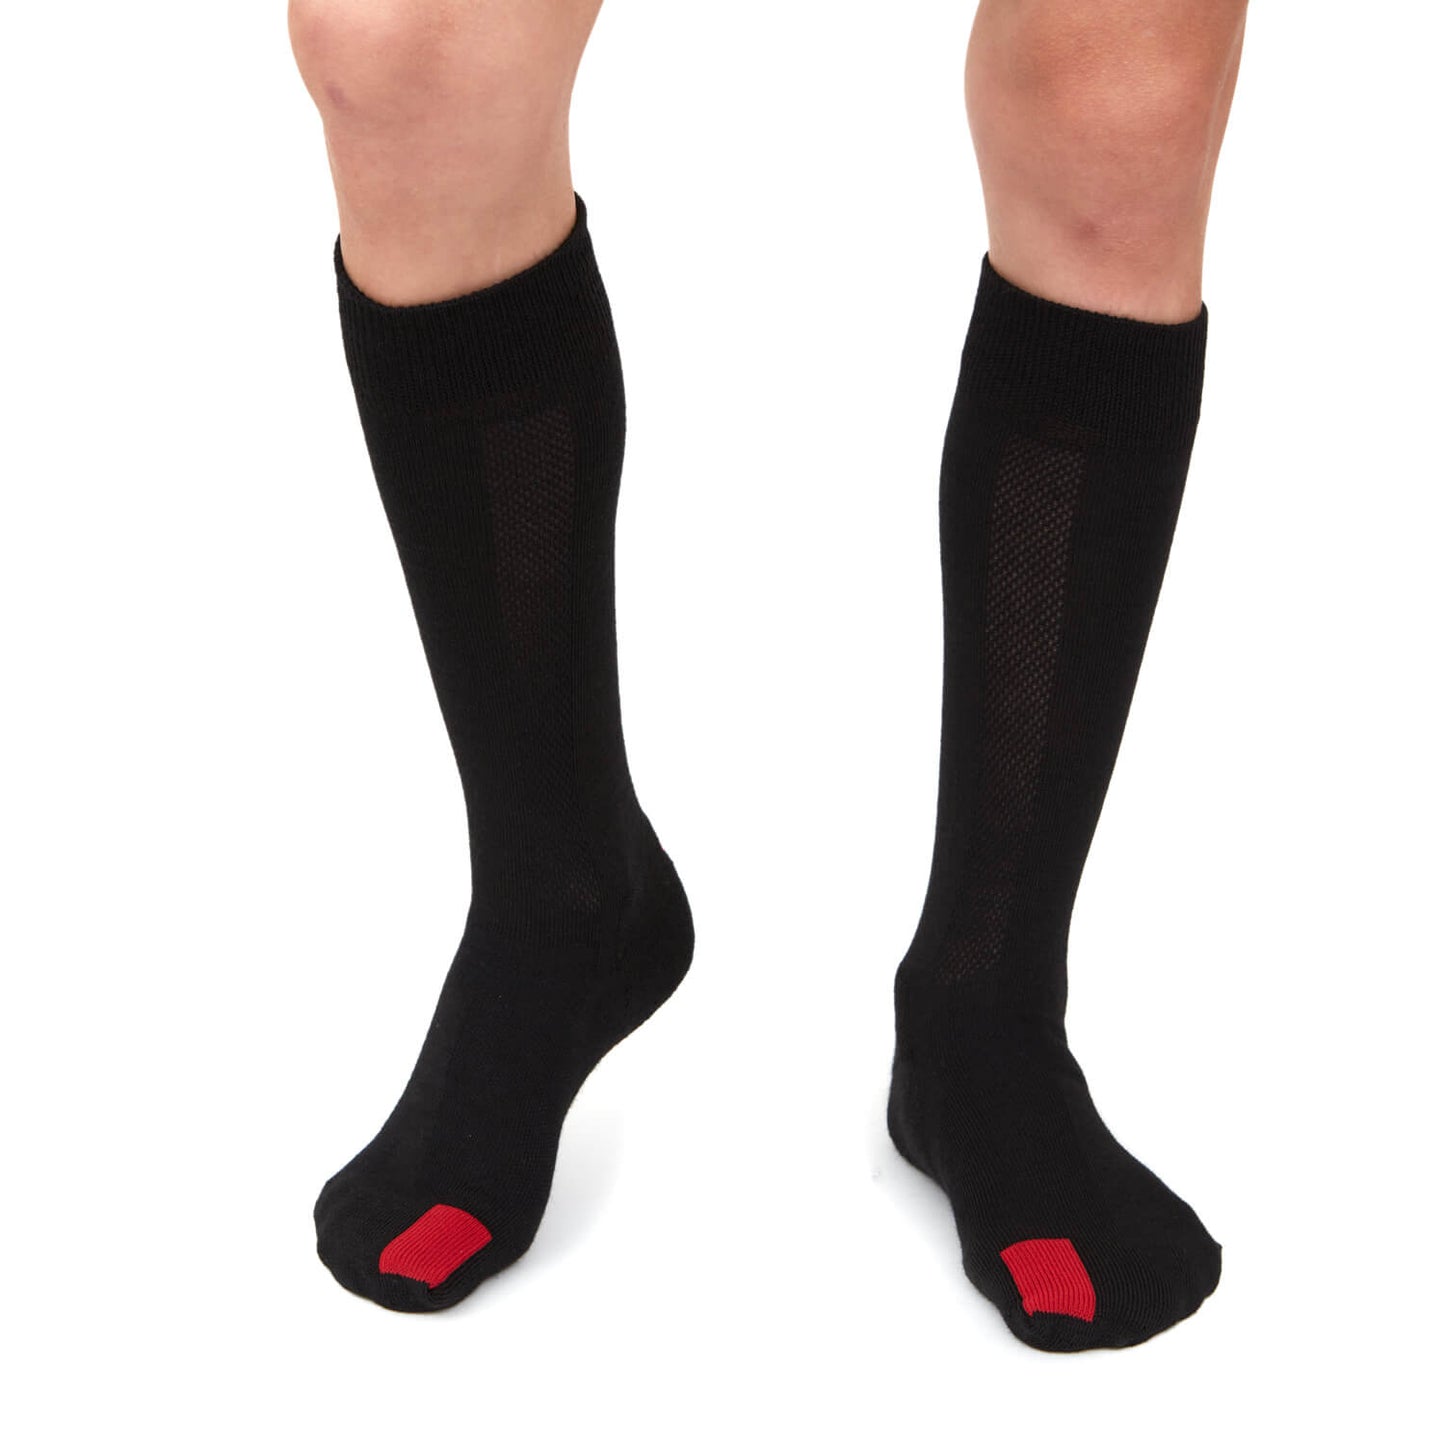 Plus12 - Calcetines barefoot largos - Lana merino - Negro – Cacles Barefoot